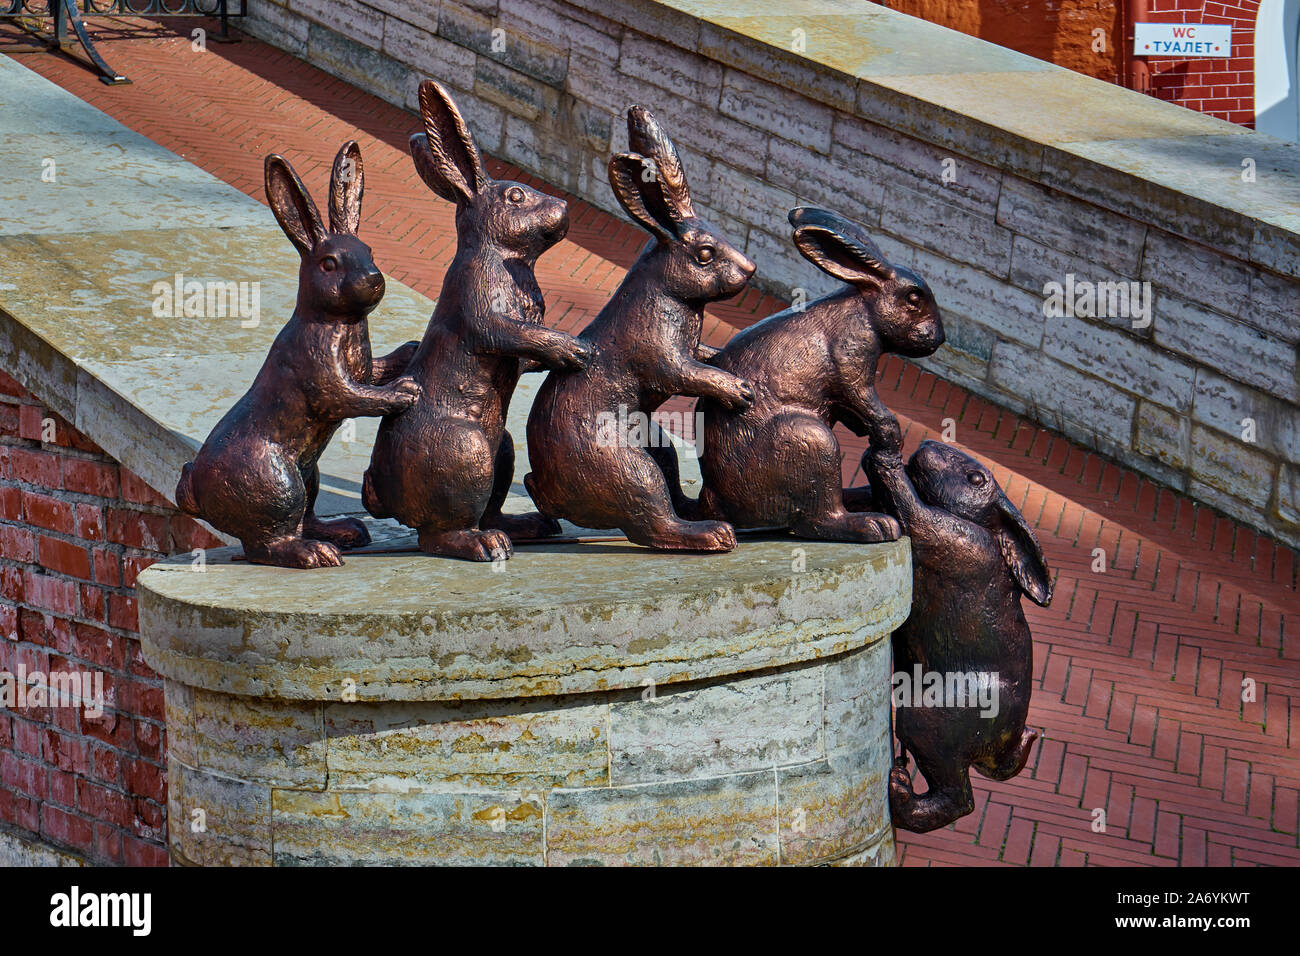 Schulptur von Hasen und Kaninchen, Sajatschi-Insel, Haseninsel, Petersburg, Russland Foto Stock